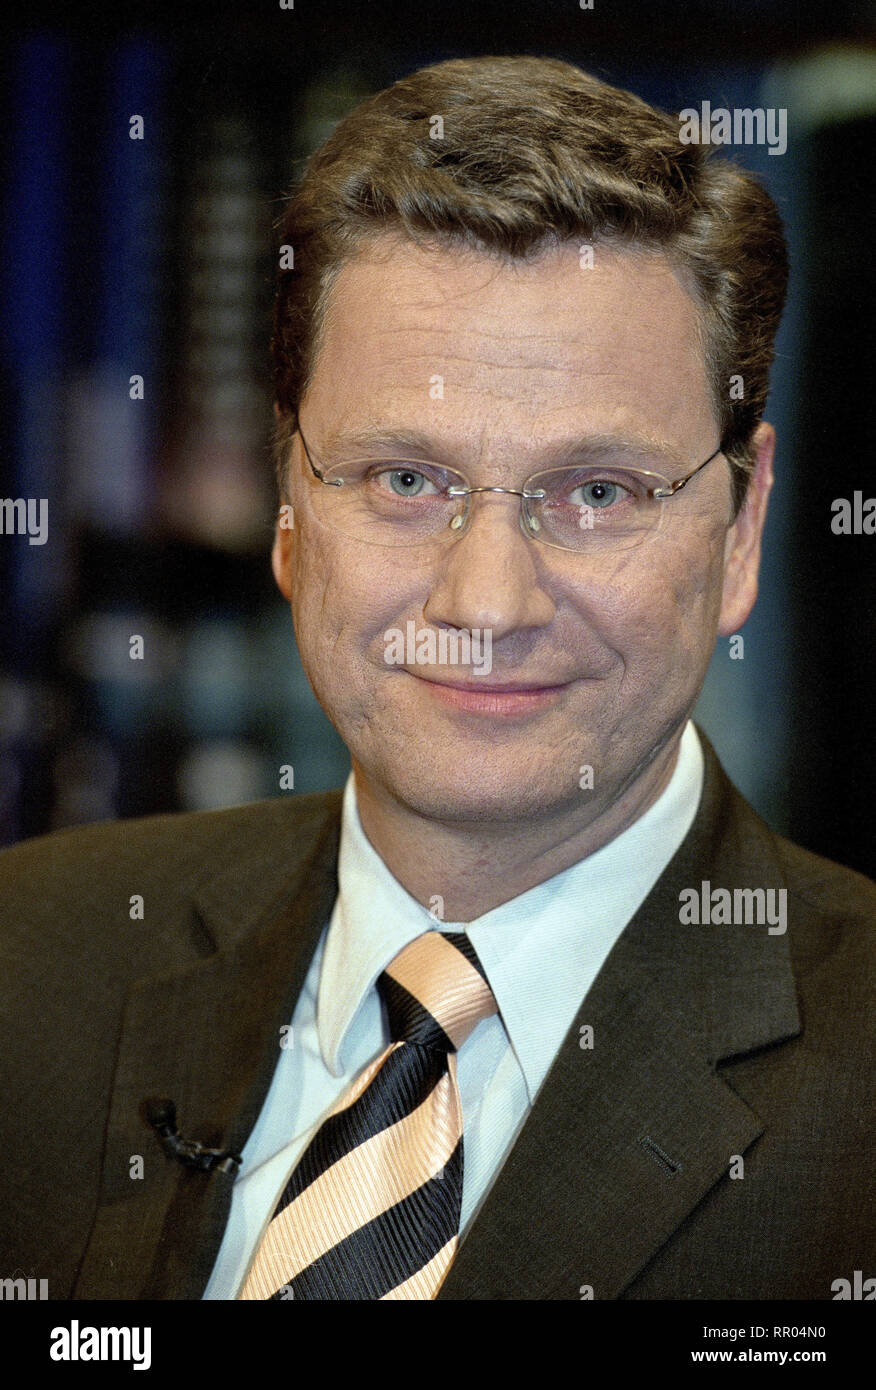 GUIDO WESTERWELLE / Guido Westerwelle- FDP Vorsitzender 11/2001 / Überschrift: Guido Westerwelle Foto de stock